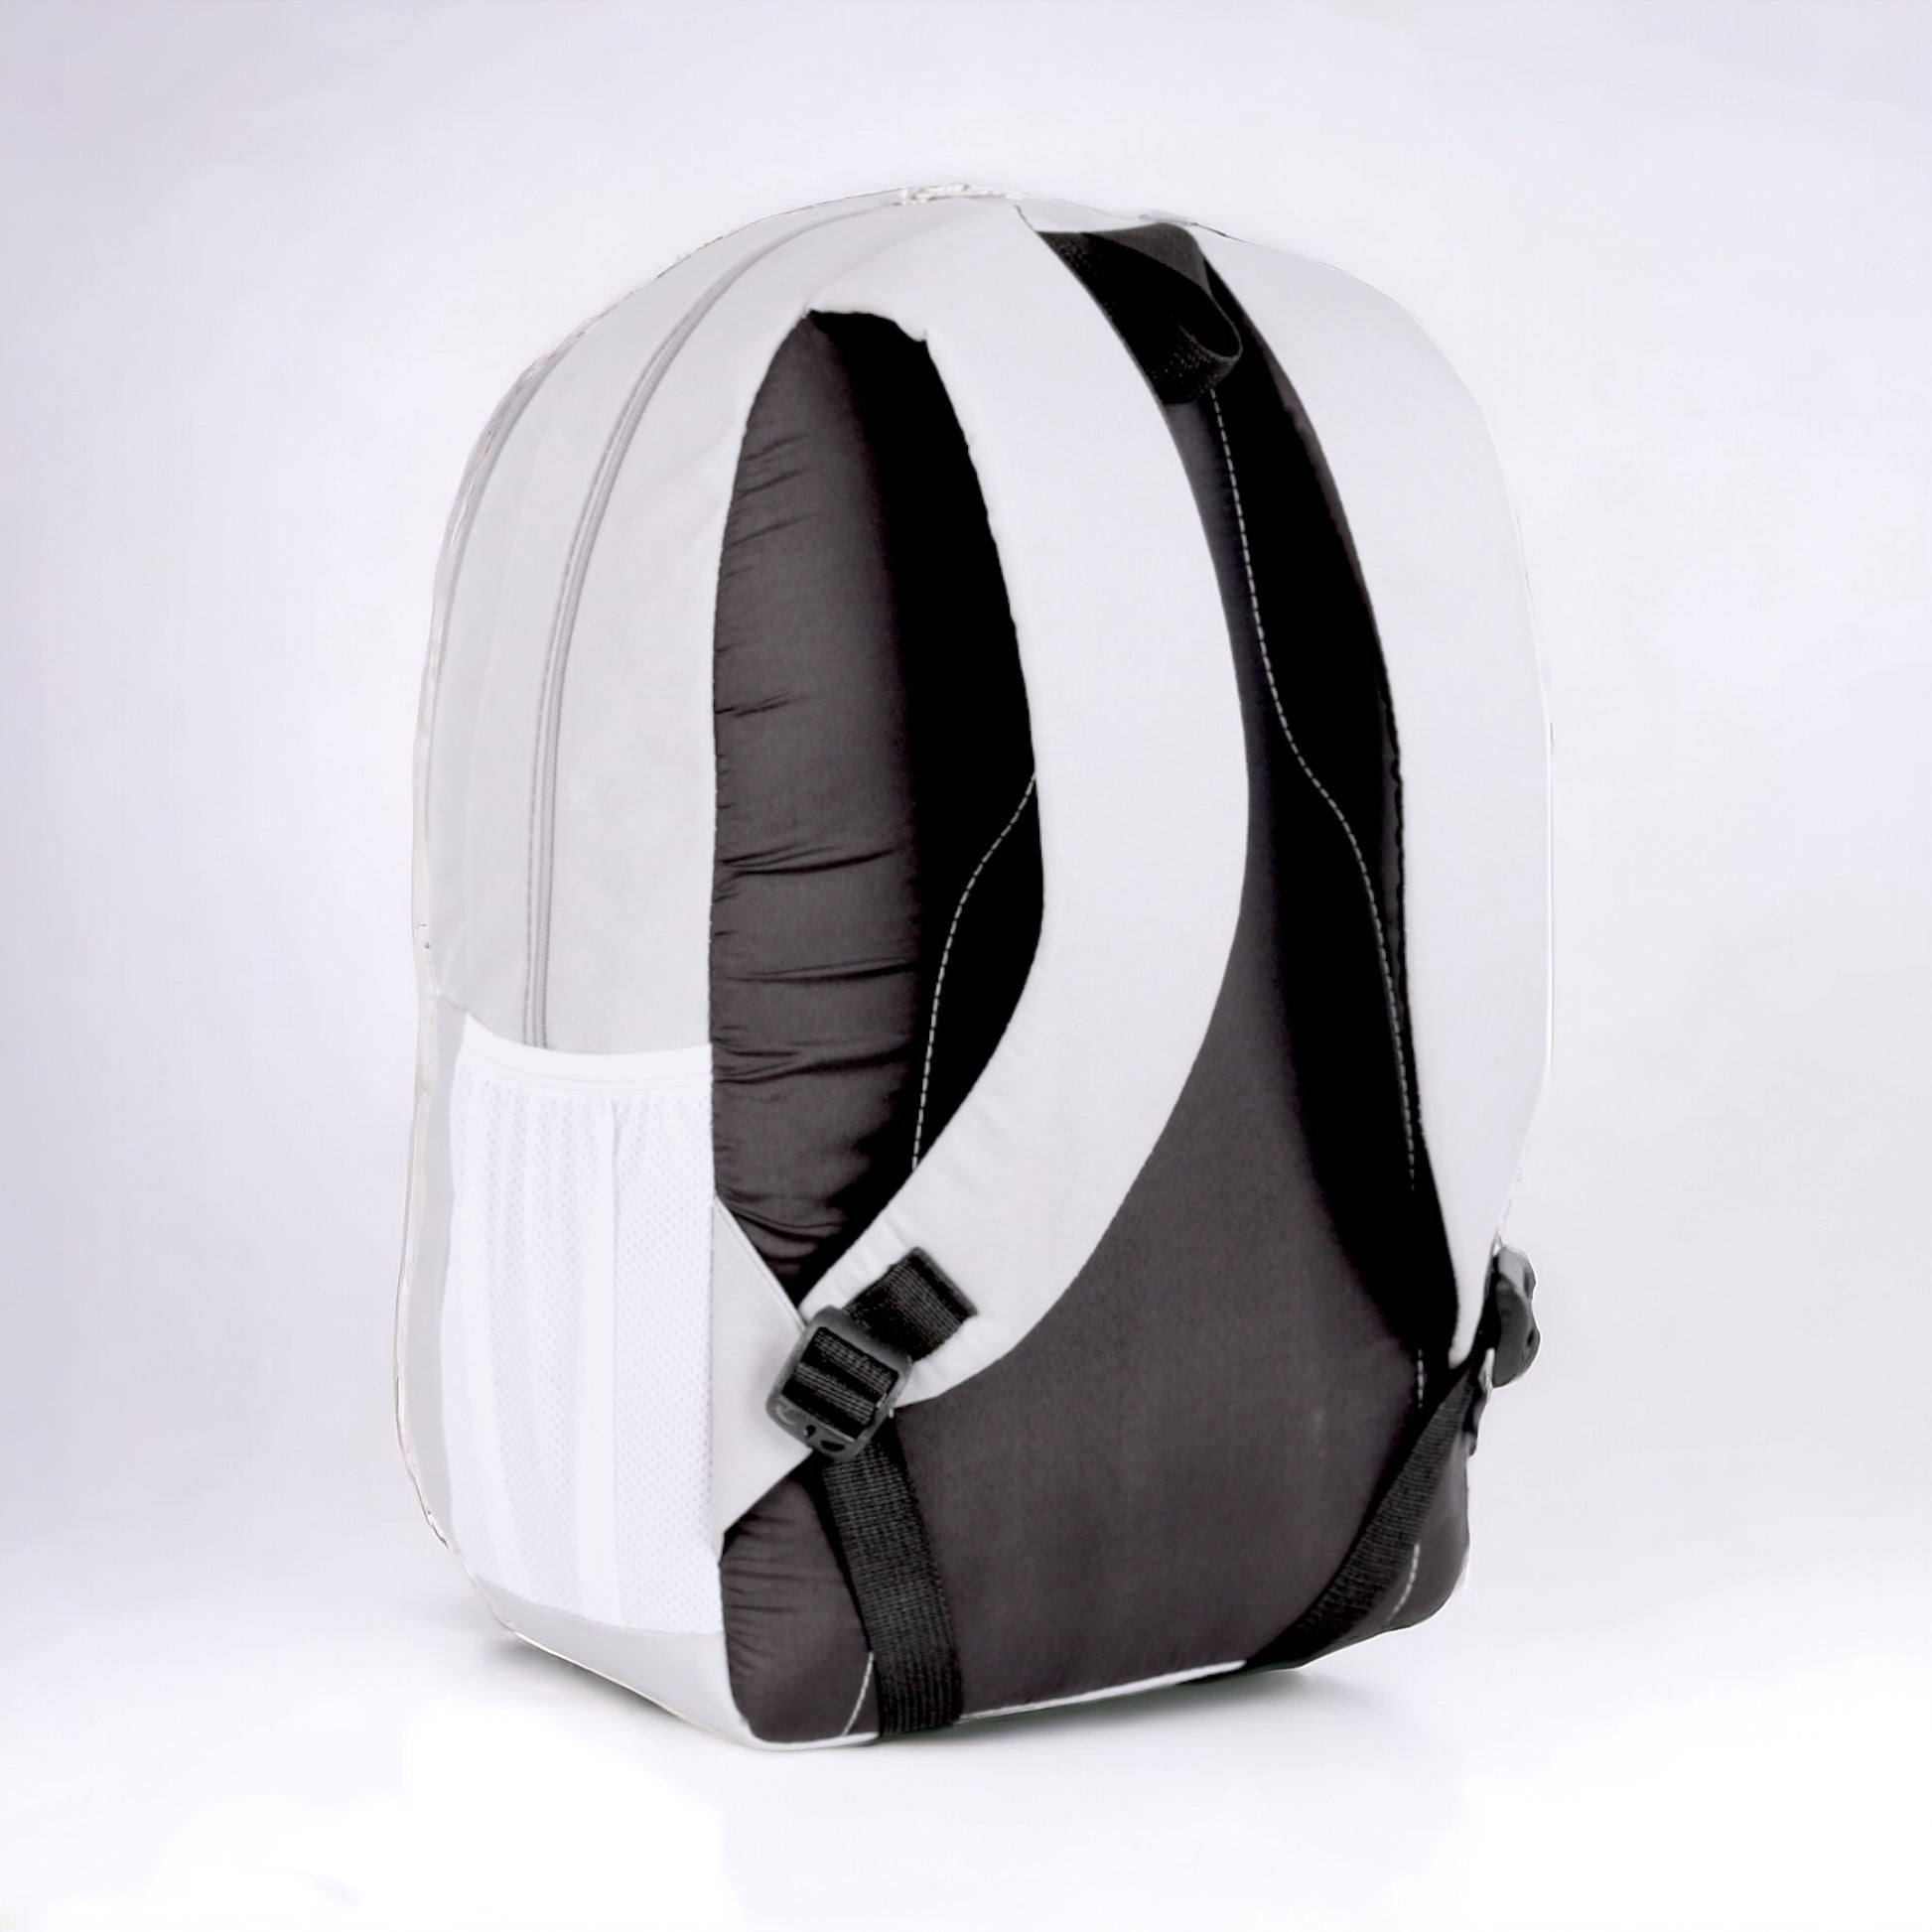 Force Backpack Unisex -zamalek pattern-Gray - Ful waterproof - FNE1911